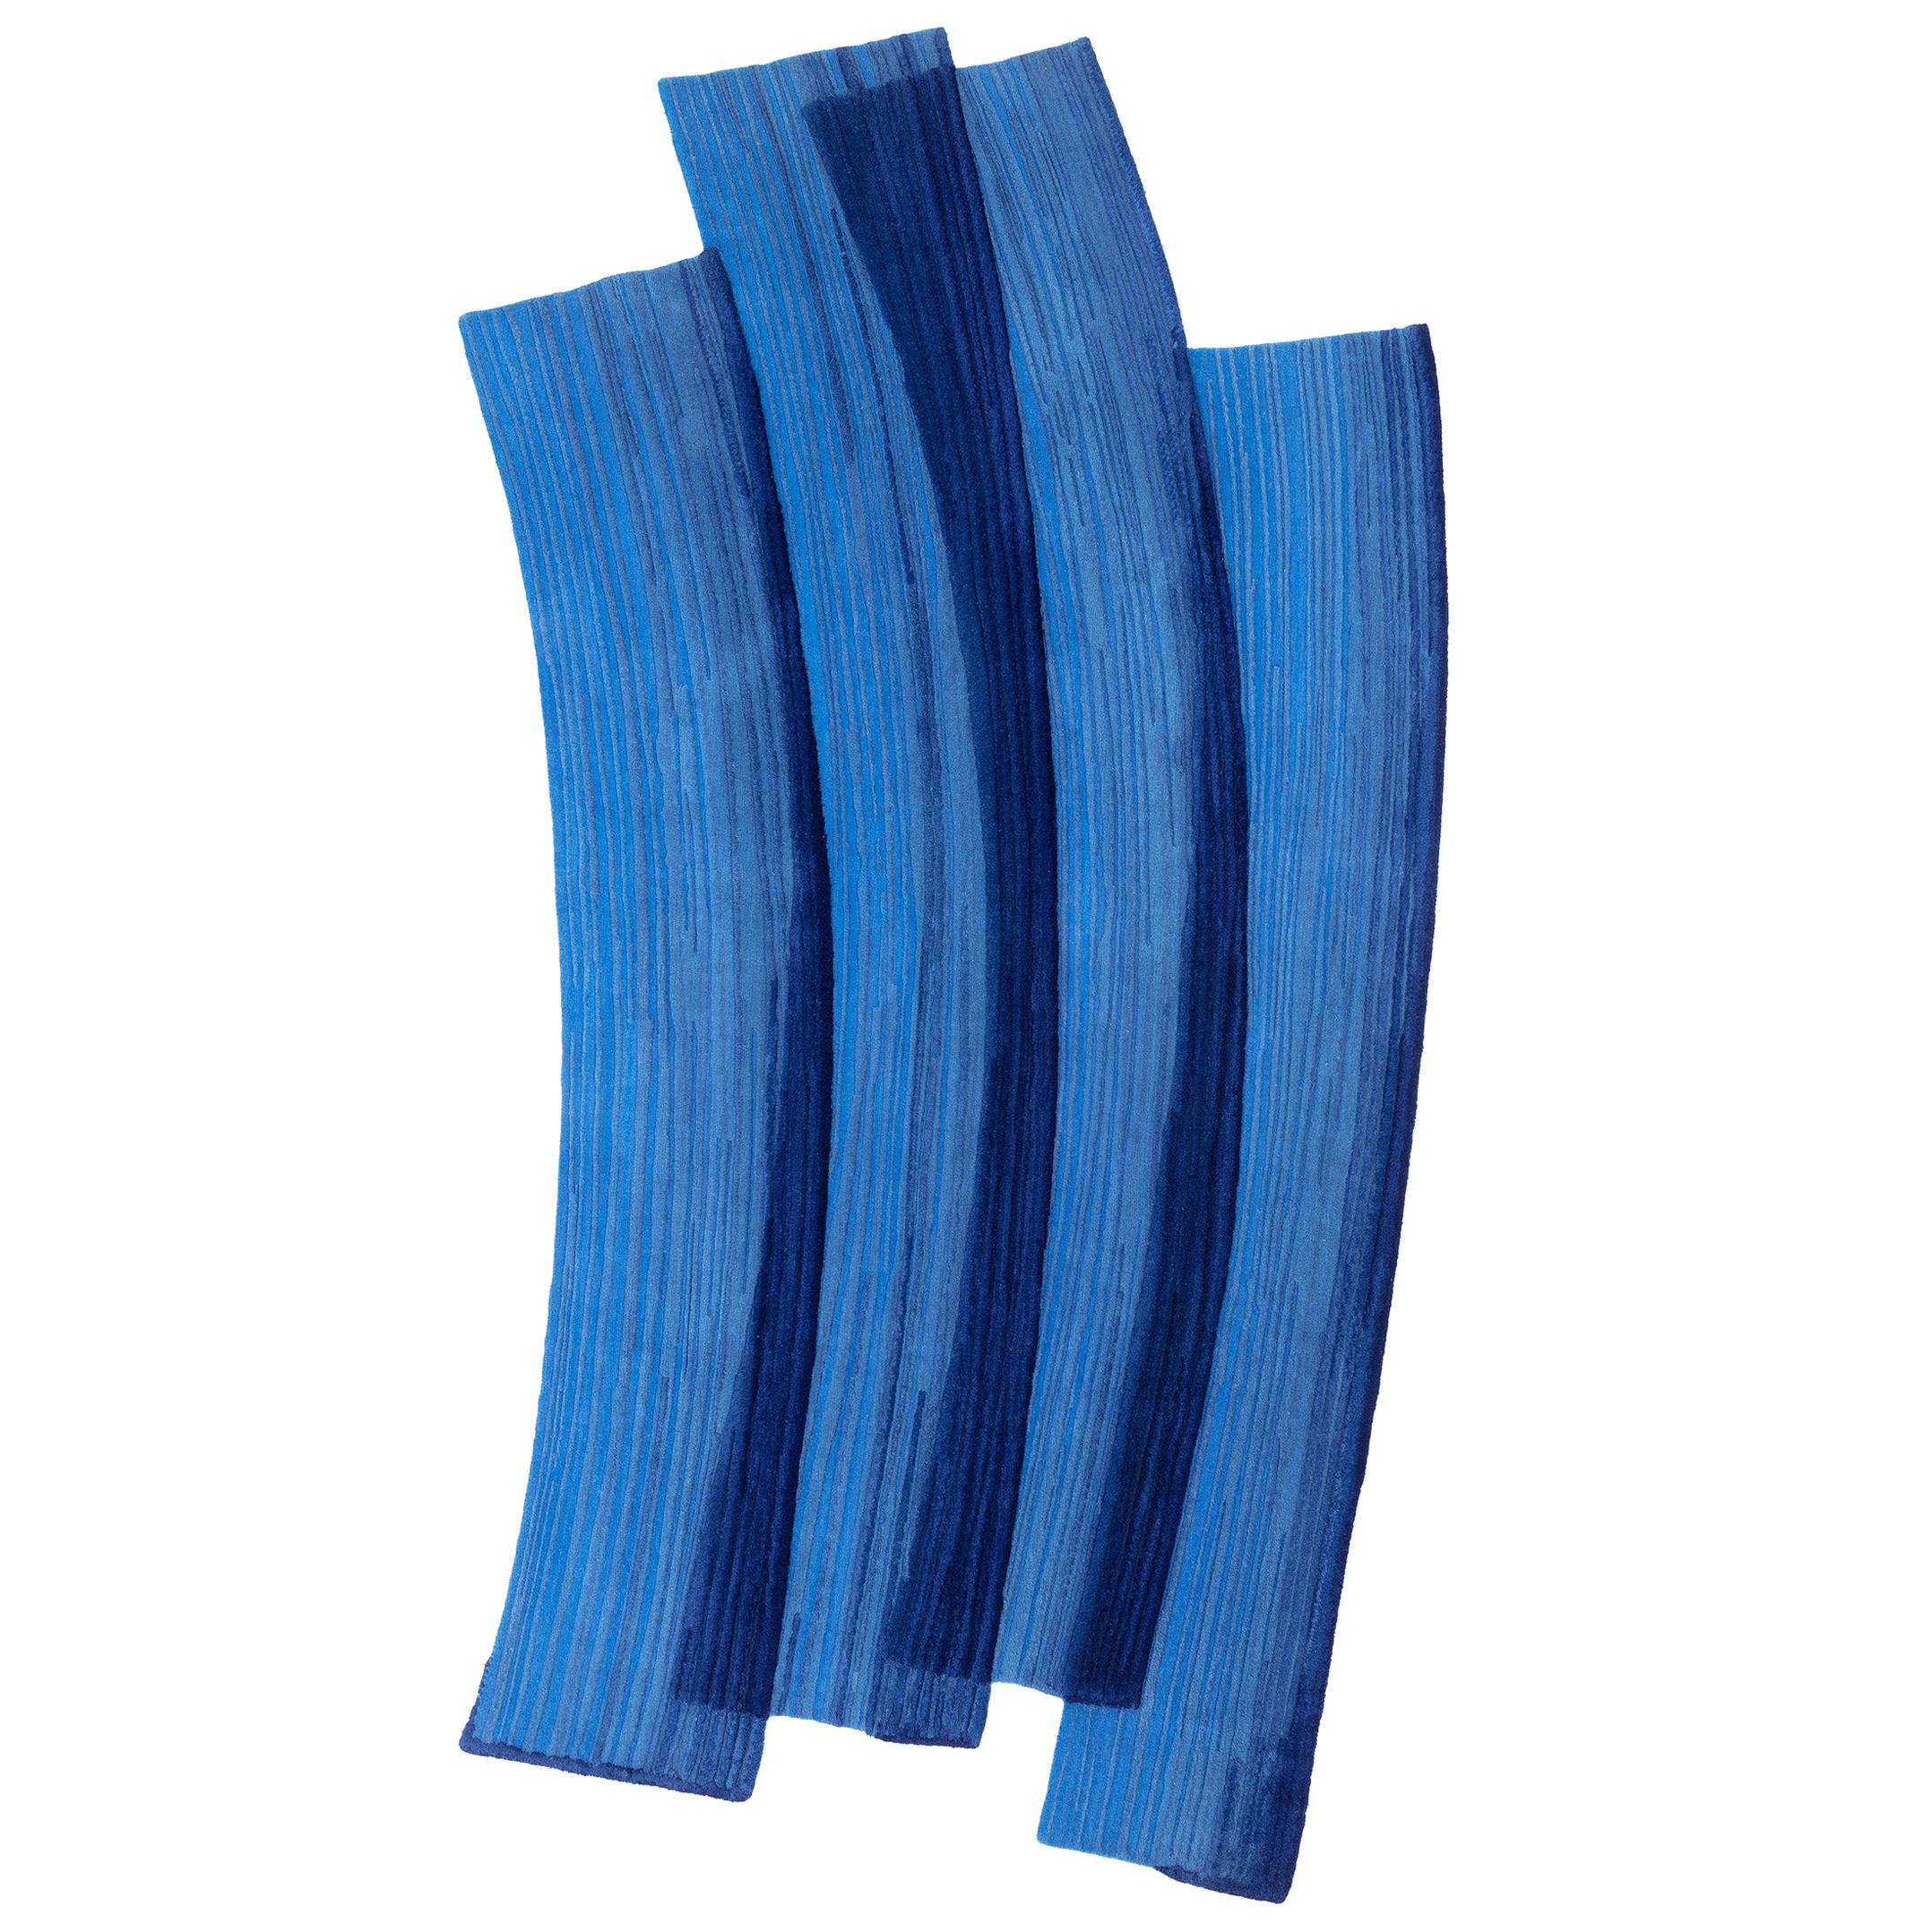 Gesture cc-tapis Stroke 1.0, handgefertigter blauer Teppich aus Wolle von Sabine Marcelis